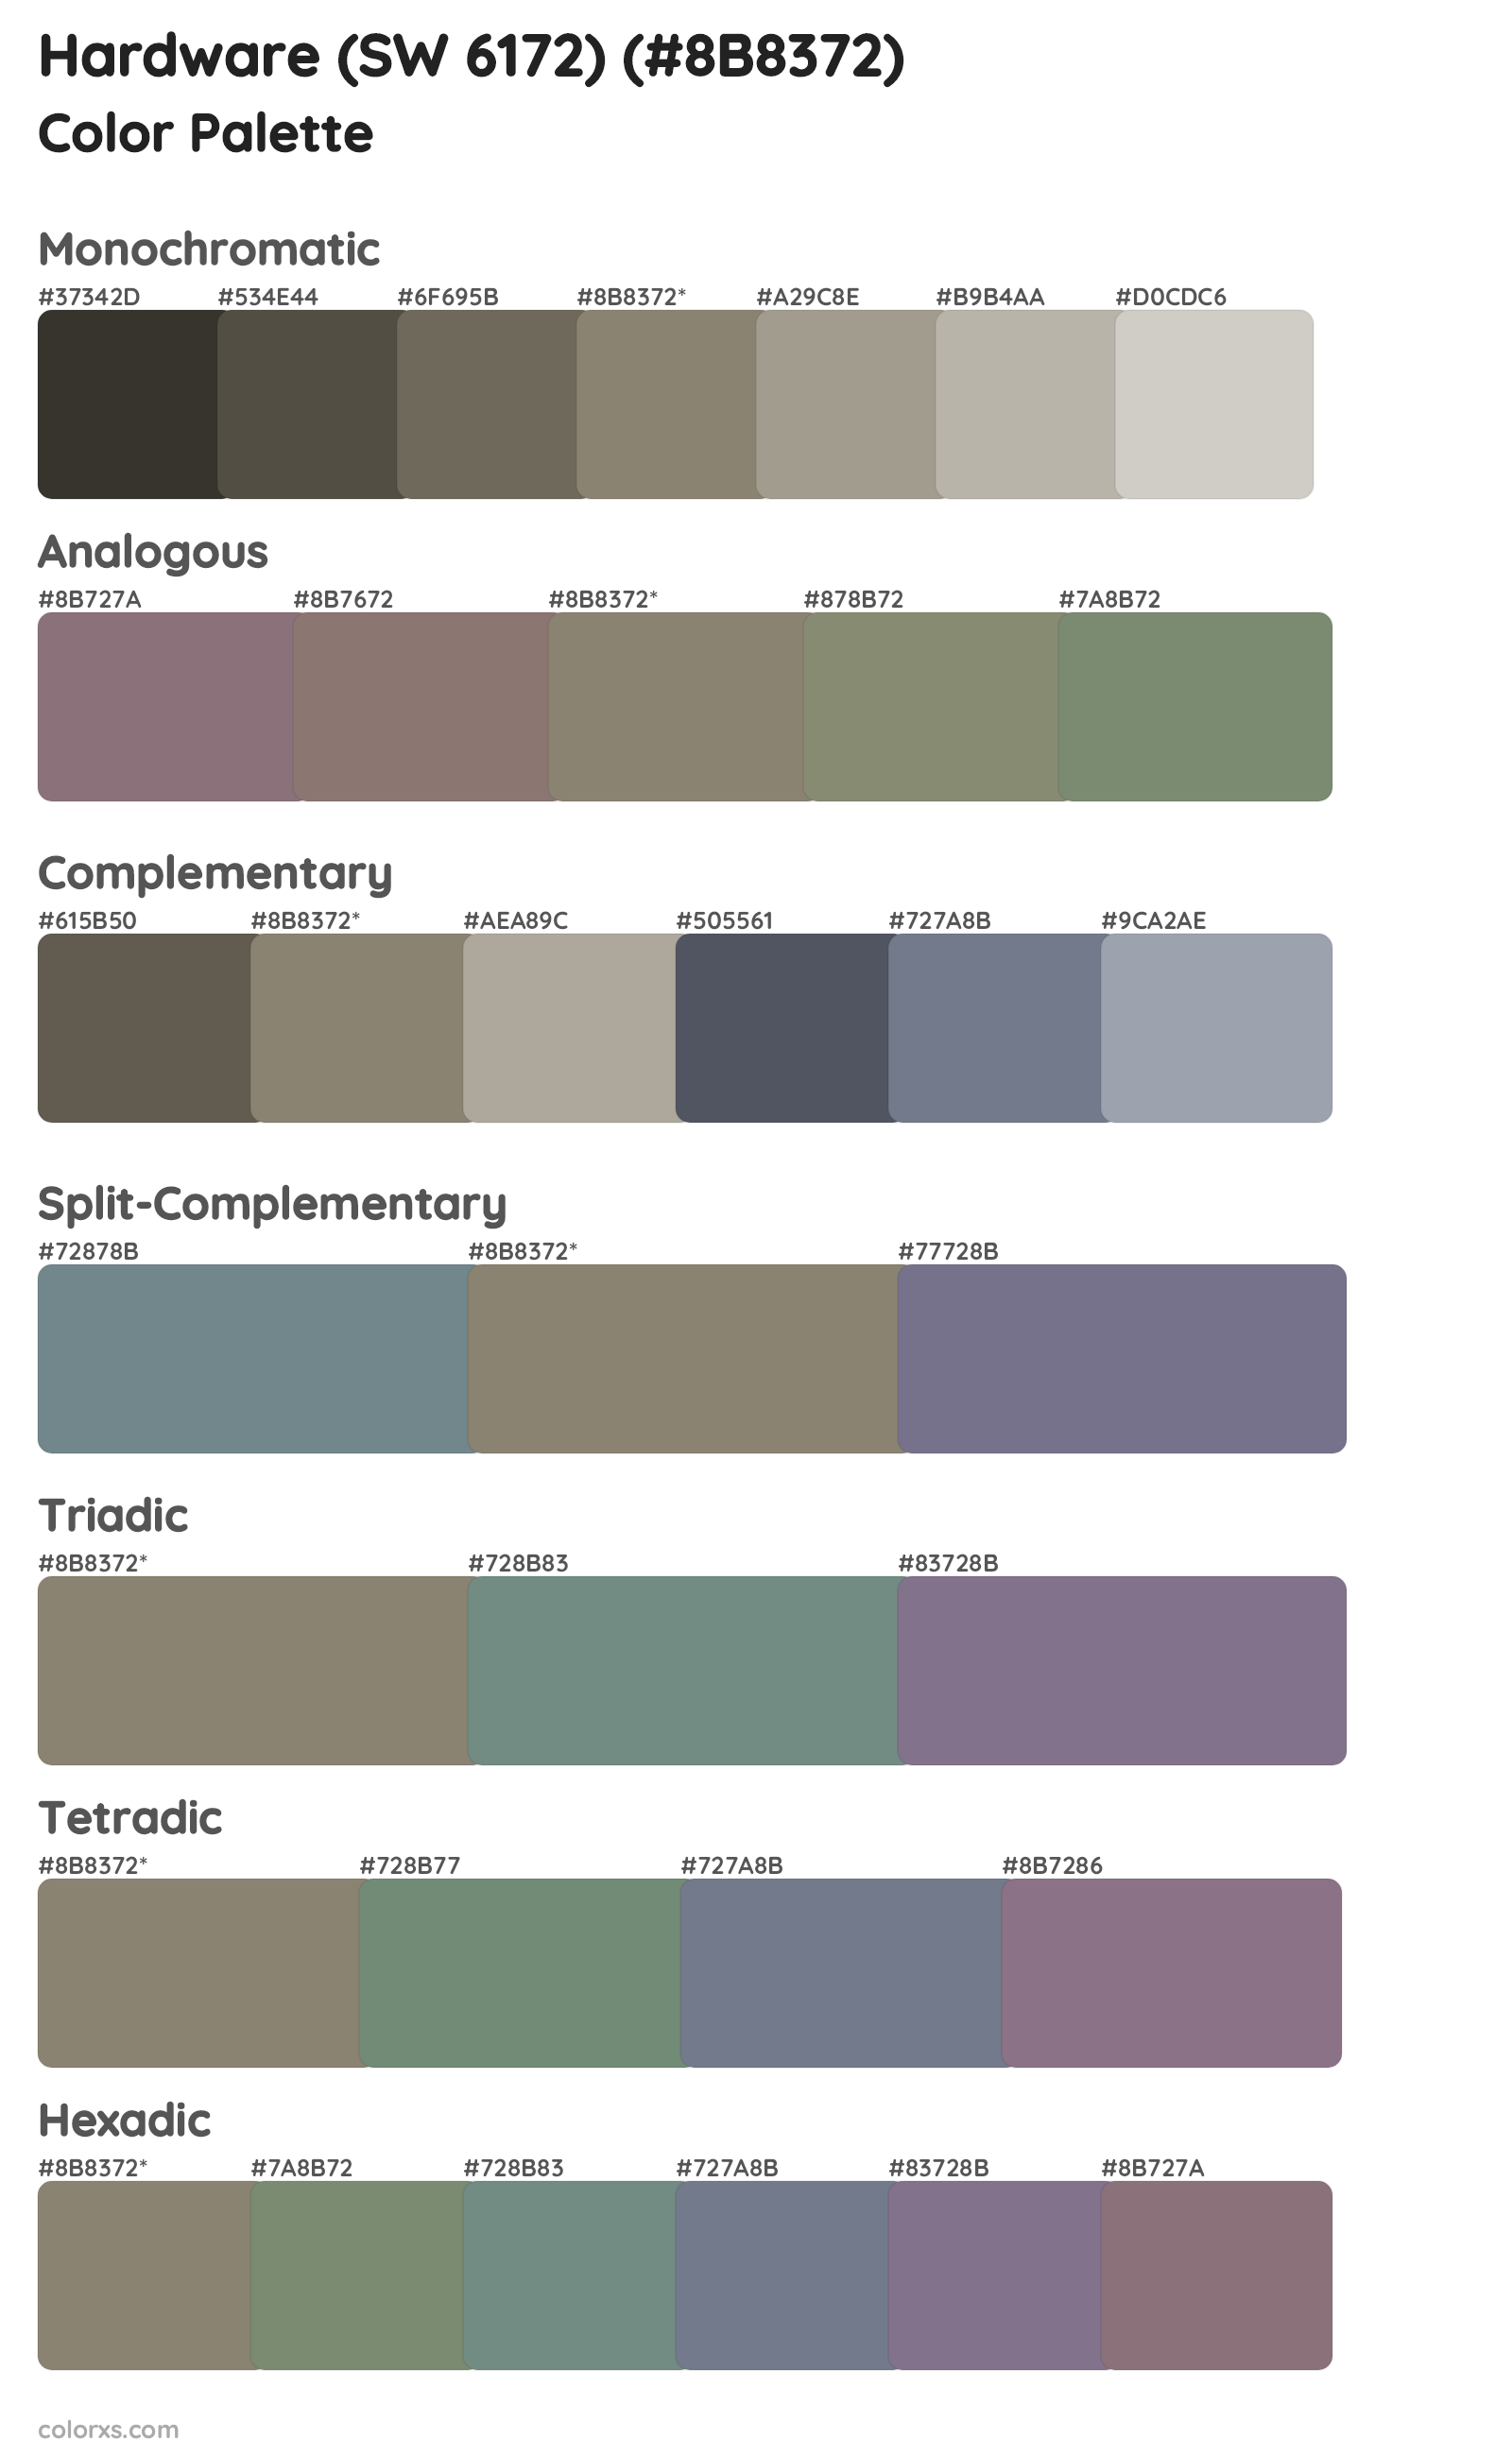 Hardware (SW 6172) Color Scheme Palettes